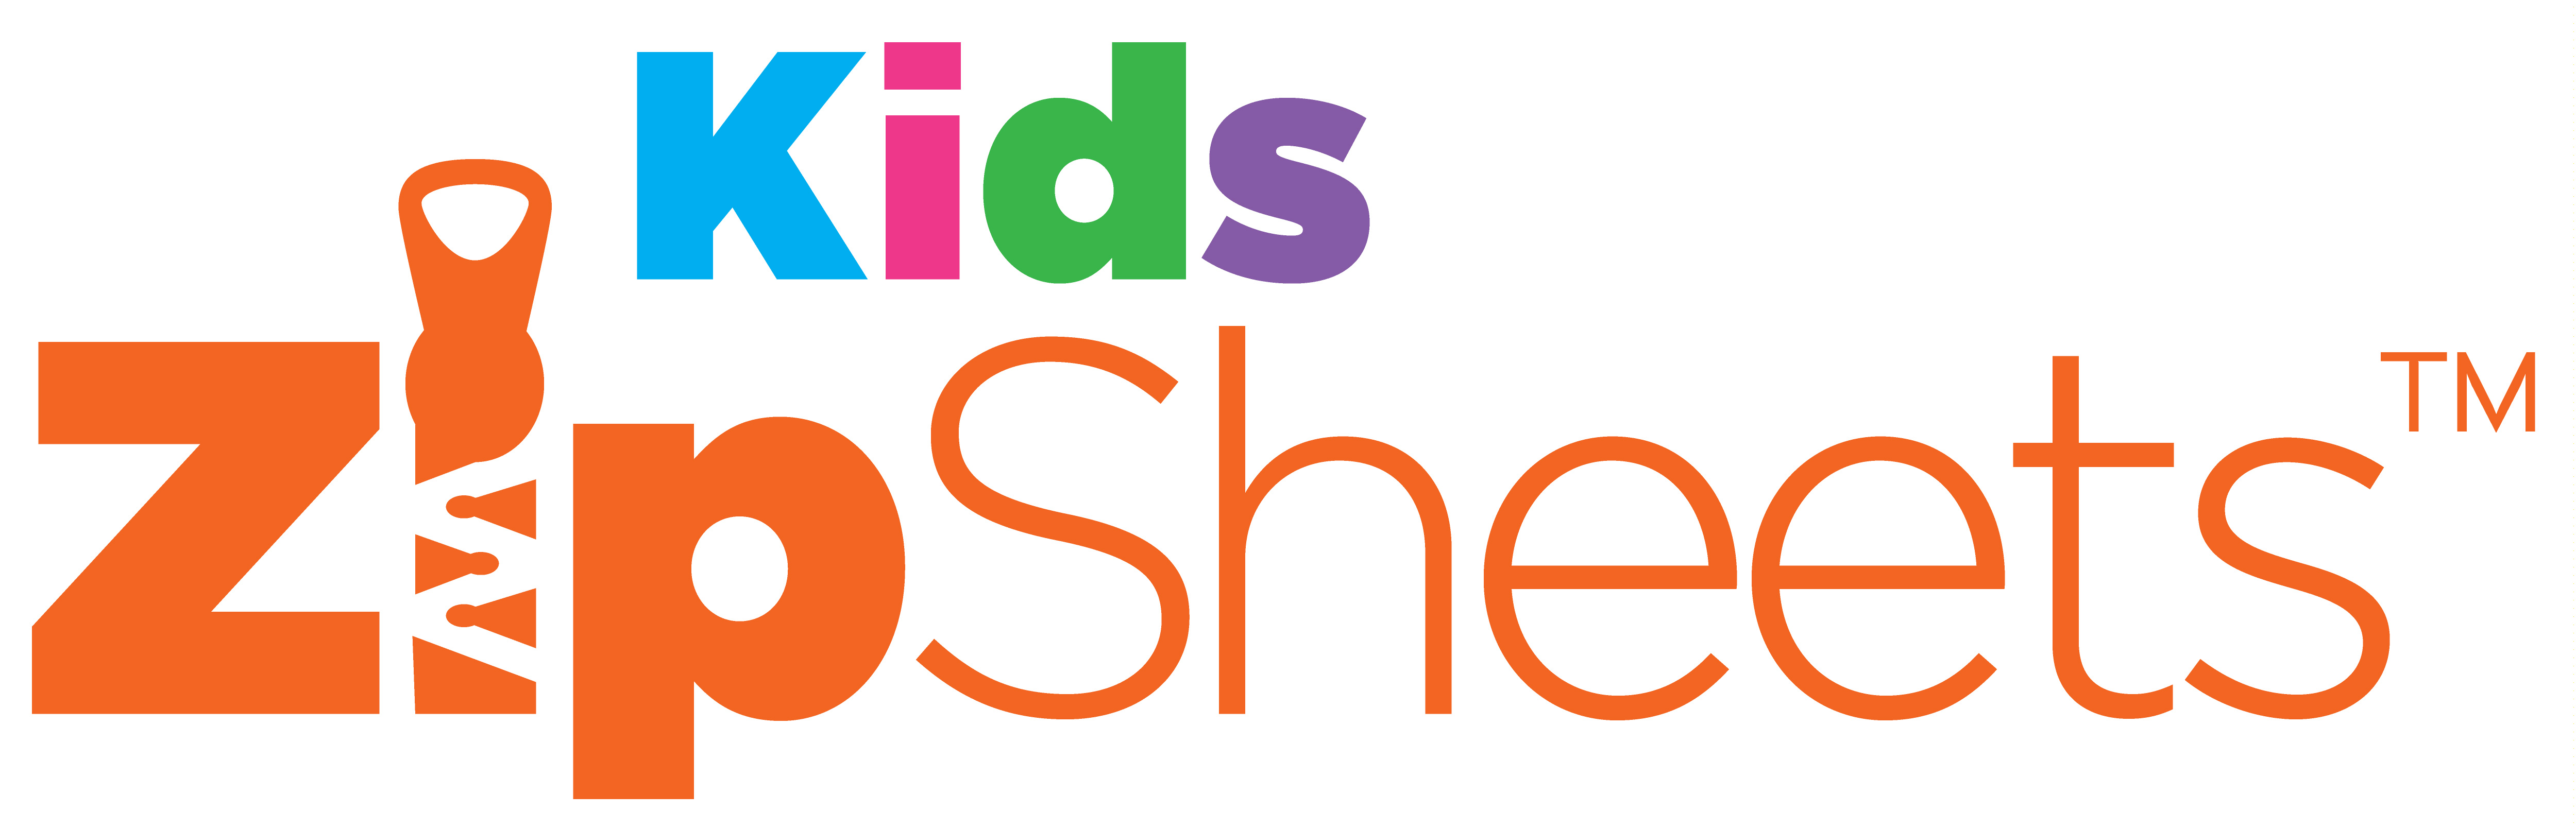 Kids Zip Sheets (Europe) logo